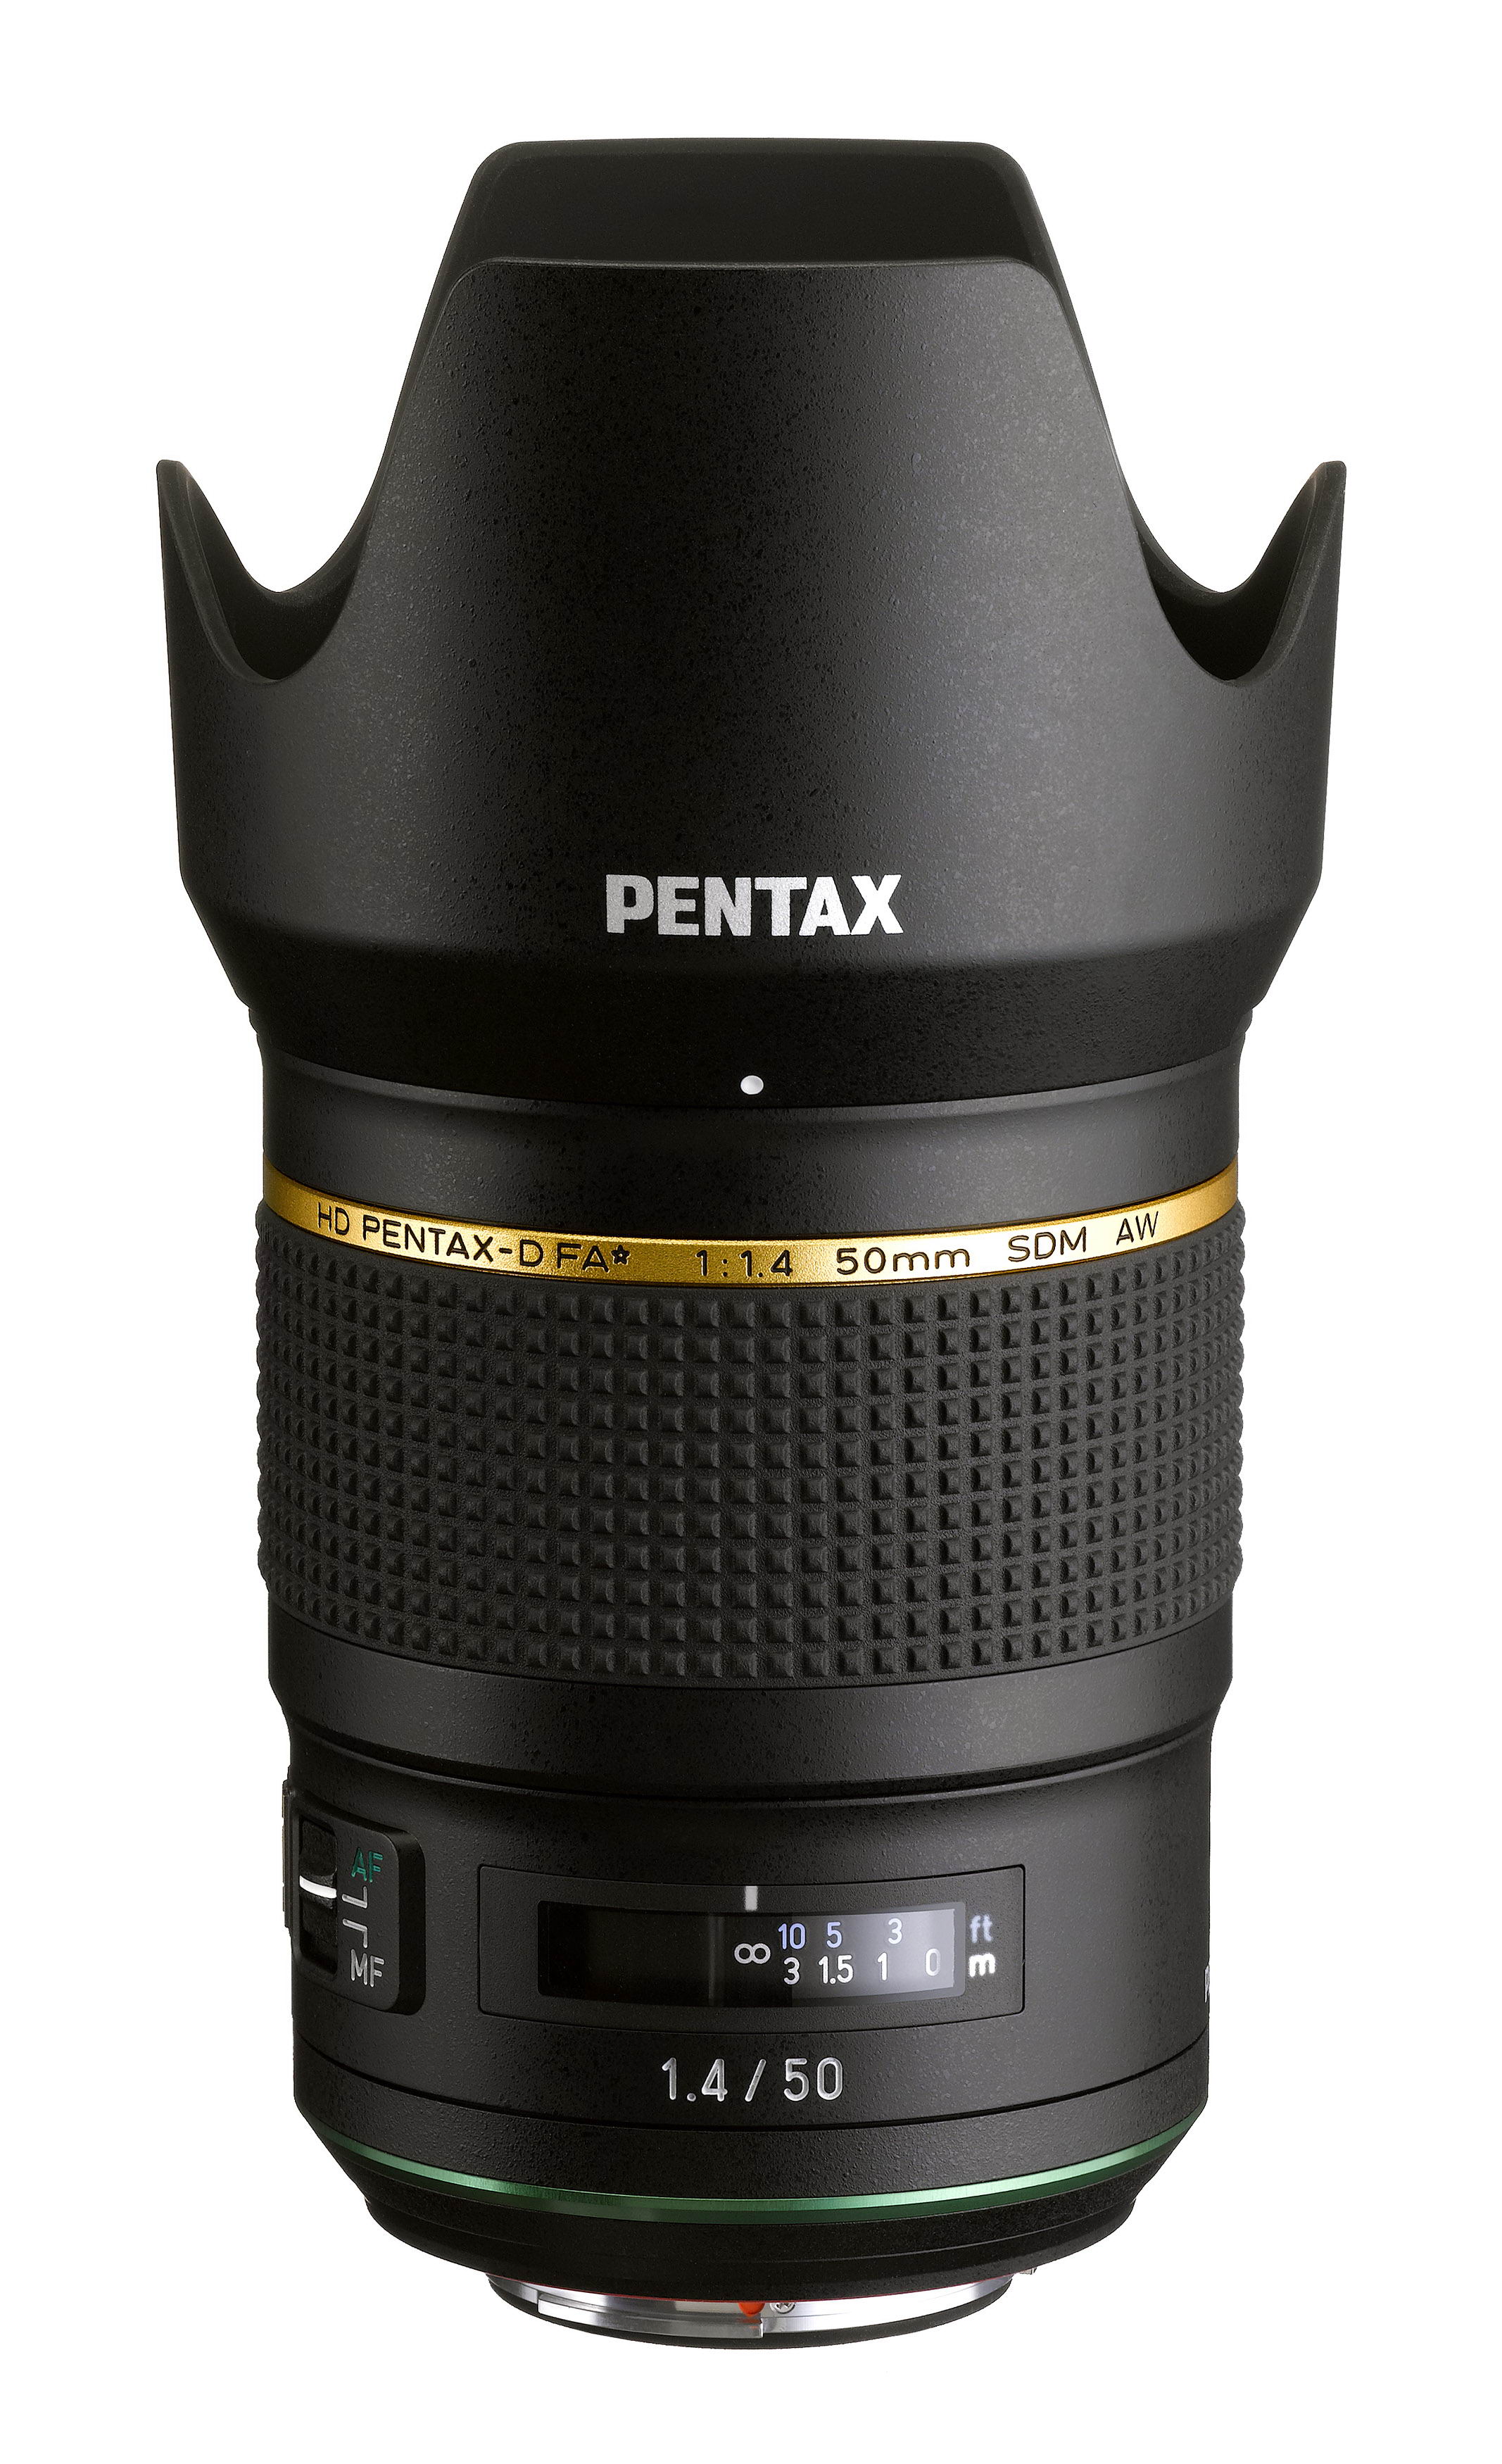 Kマウントデジタル一眼カメラ用大口径単焦点レンズ「HD PENTAX-D FA 